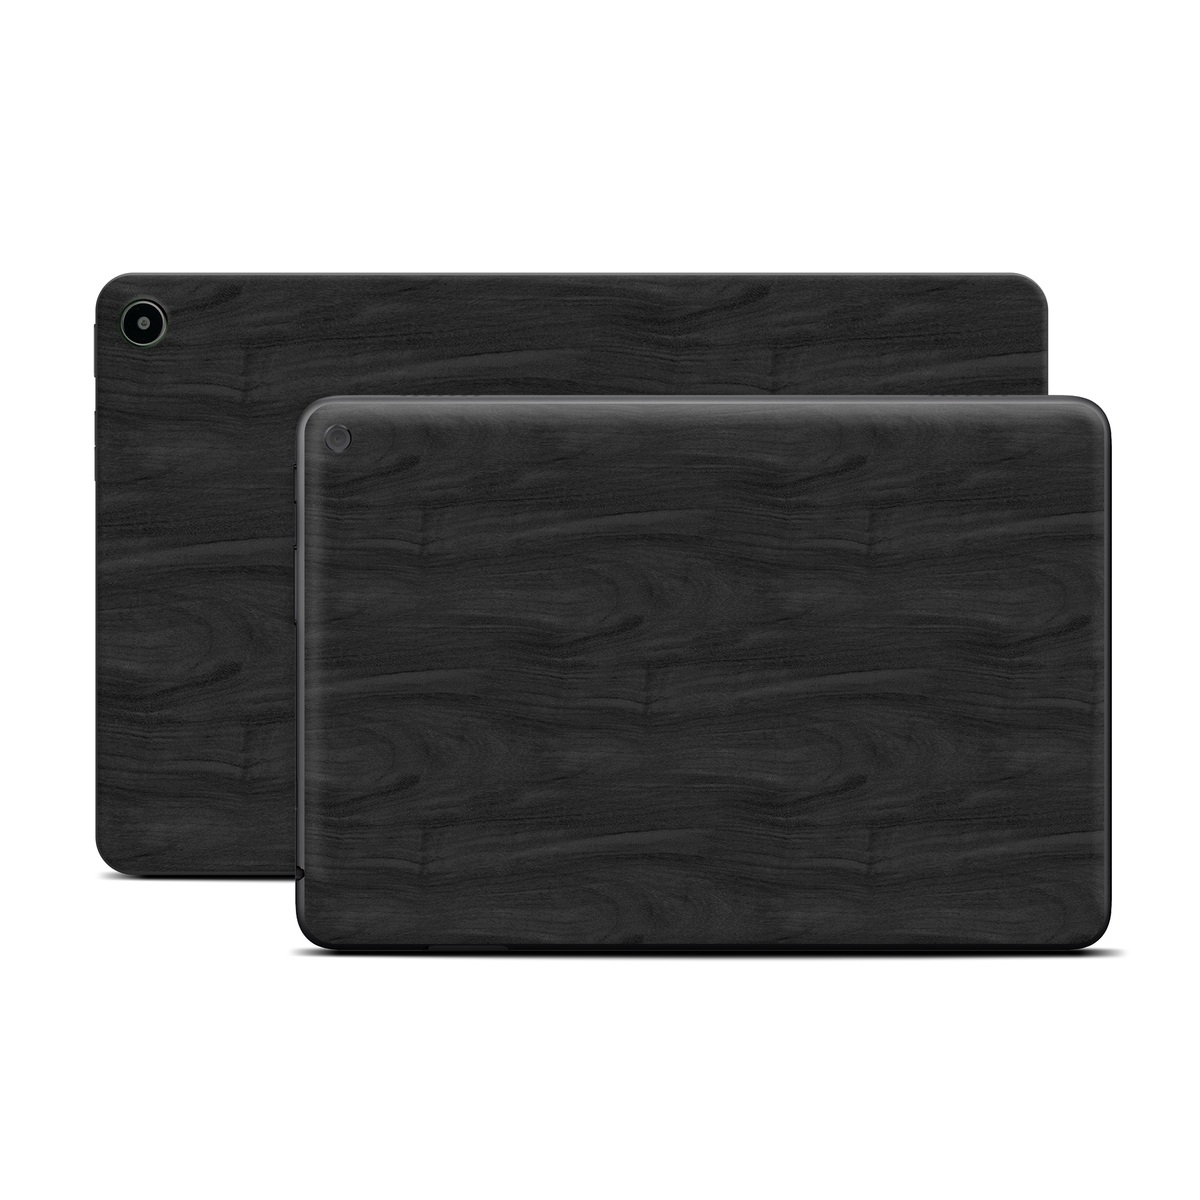 Amazon Fire Tablet Series Skin Skin design of Black, Brown, Wood, Grey, Flooring, Floor, Laminate flooring, Wood flooring, with black colors